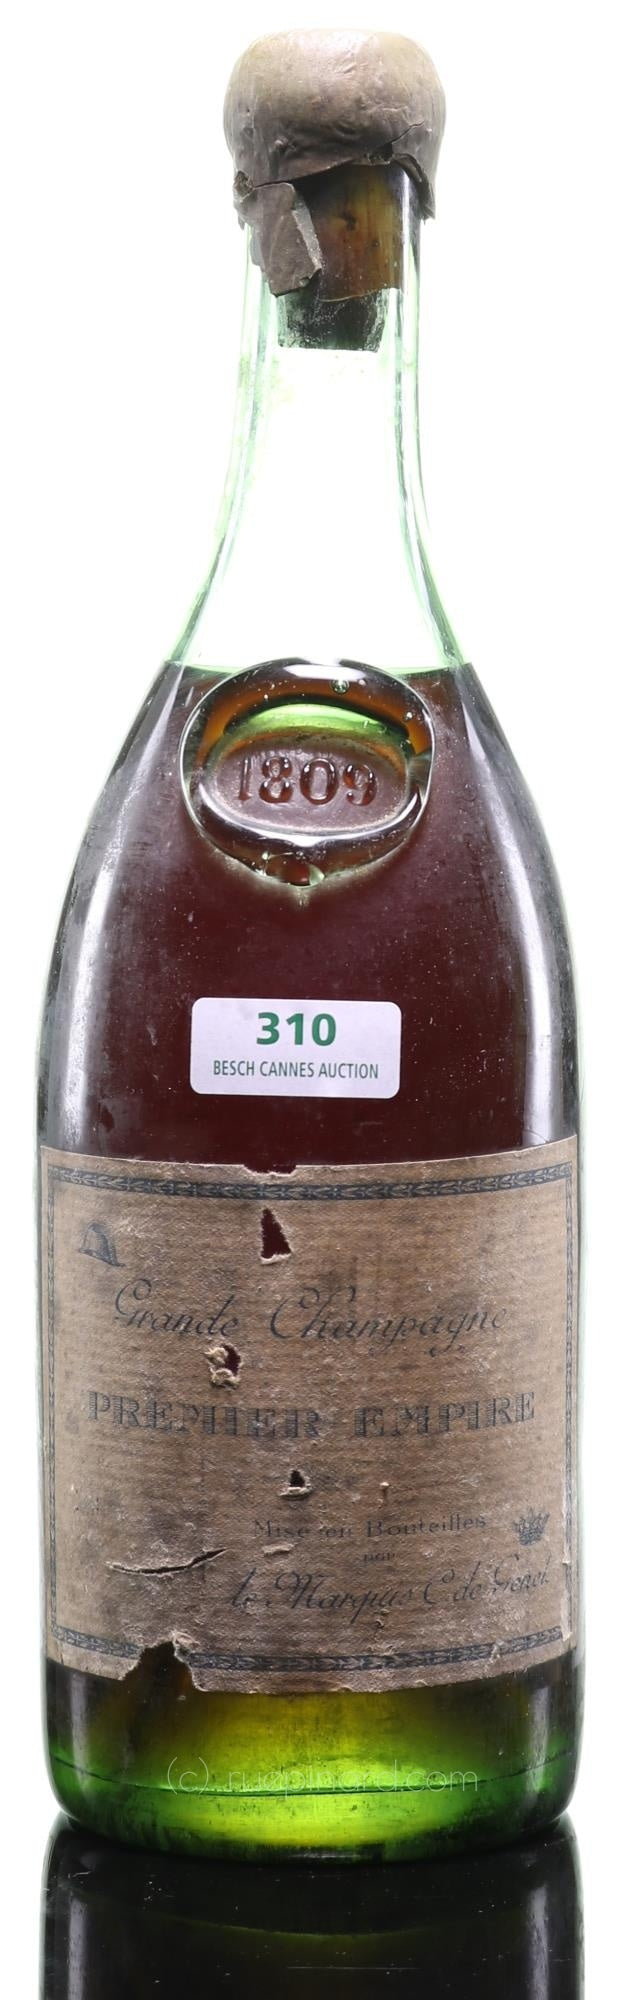 Grand Champagne Premier Empire Cognac - Marquis de Genet - 1809 Vintage - 95 Points Wine Enthusiast - Rue Pinard